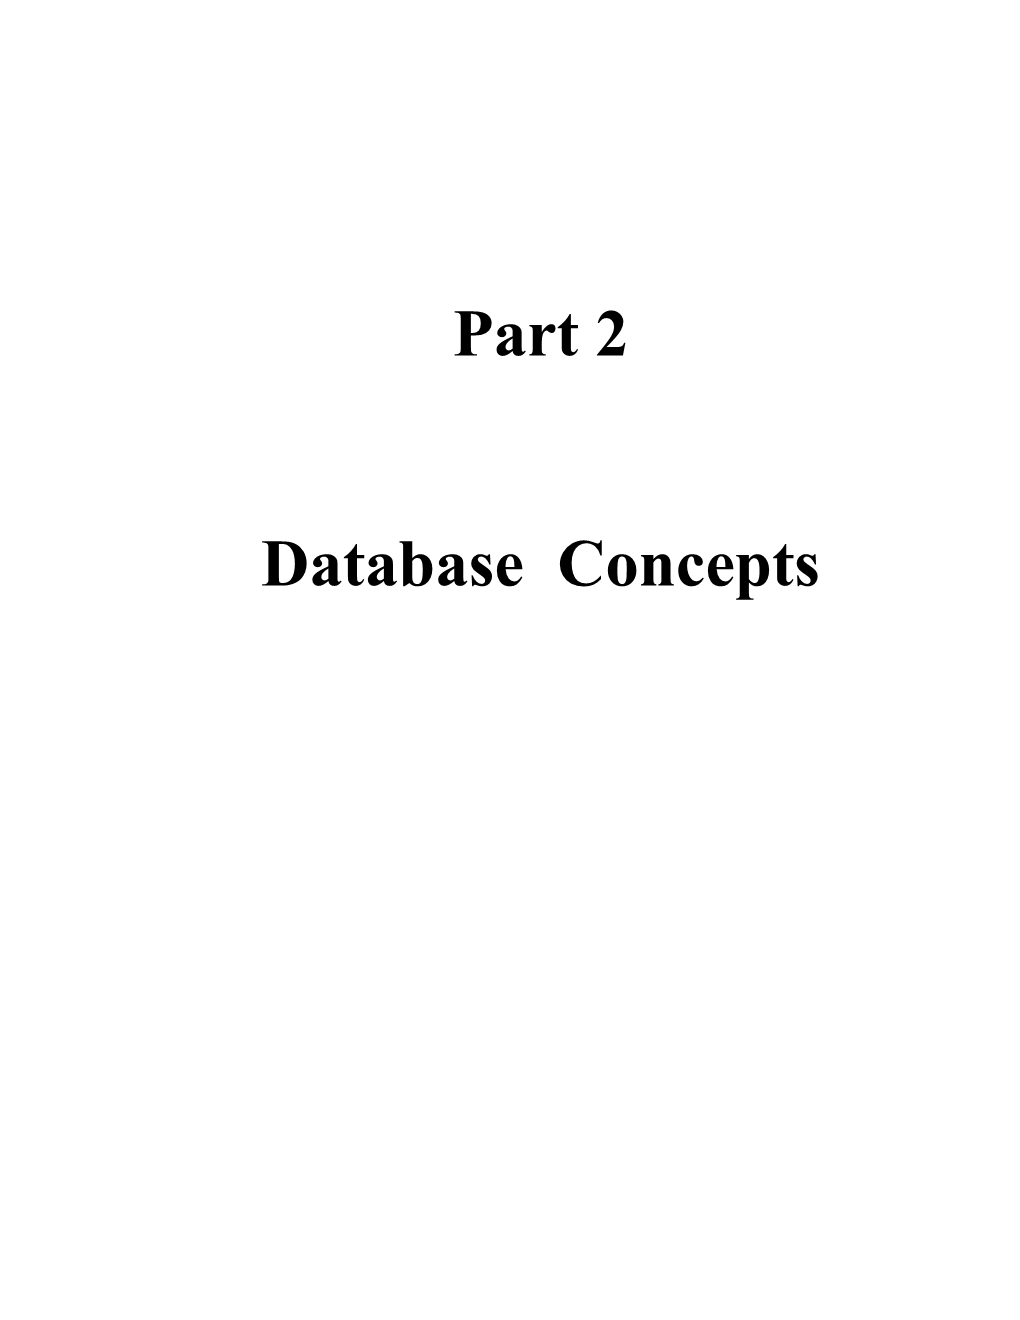 Part 2 - Database Concepts